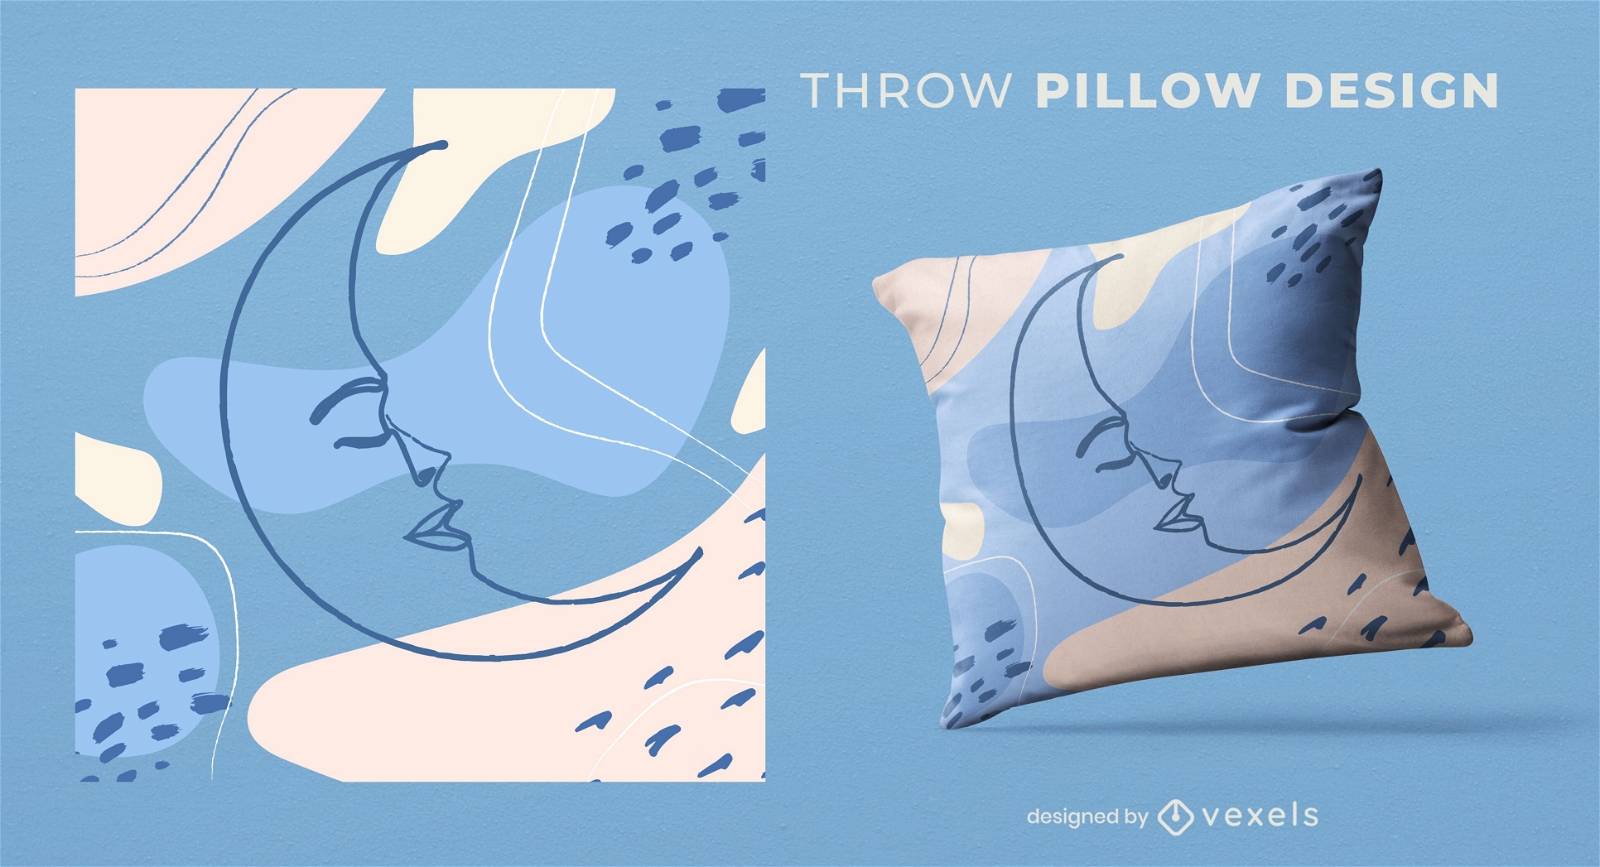 Abstract moon throw pillow design